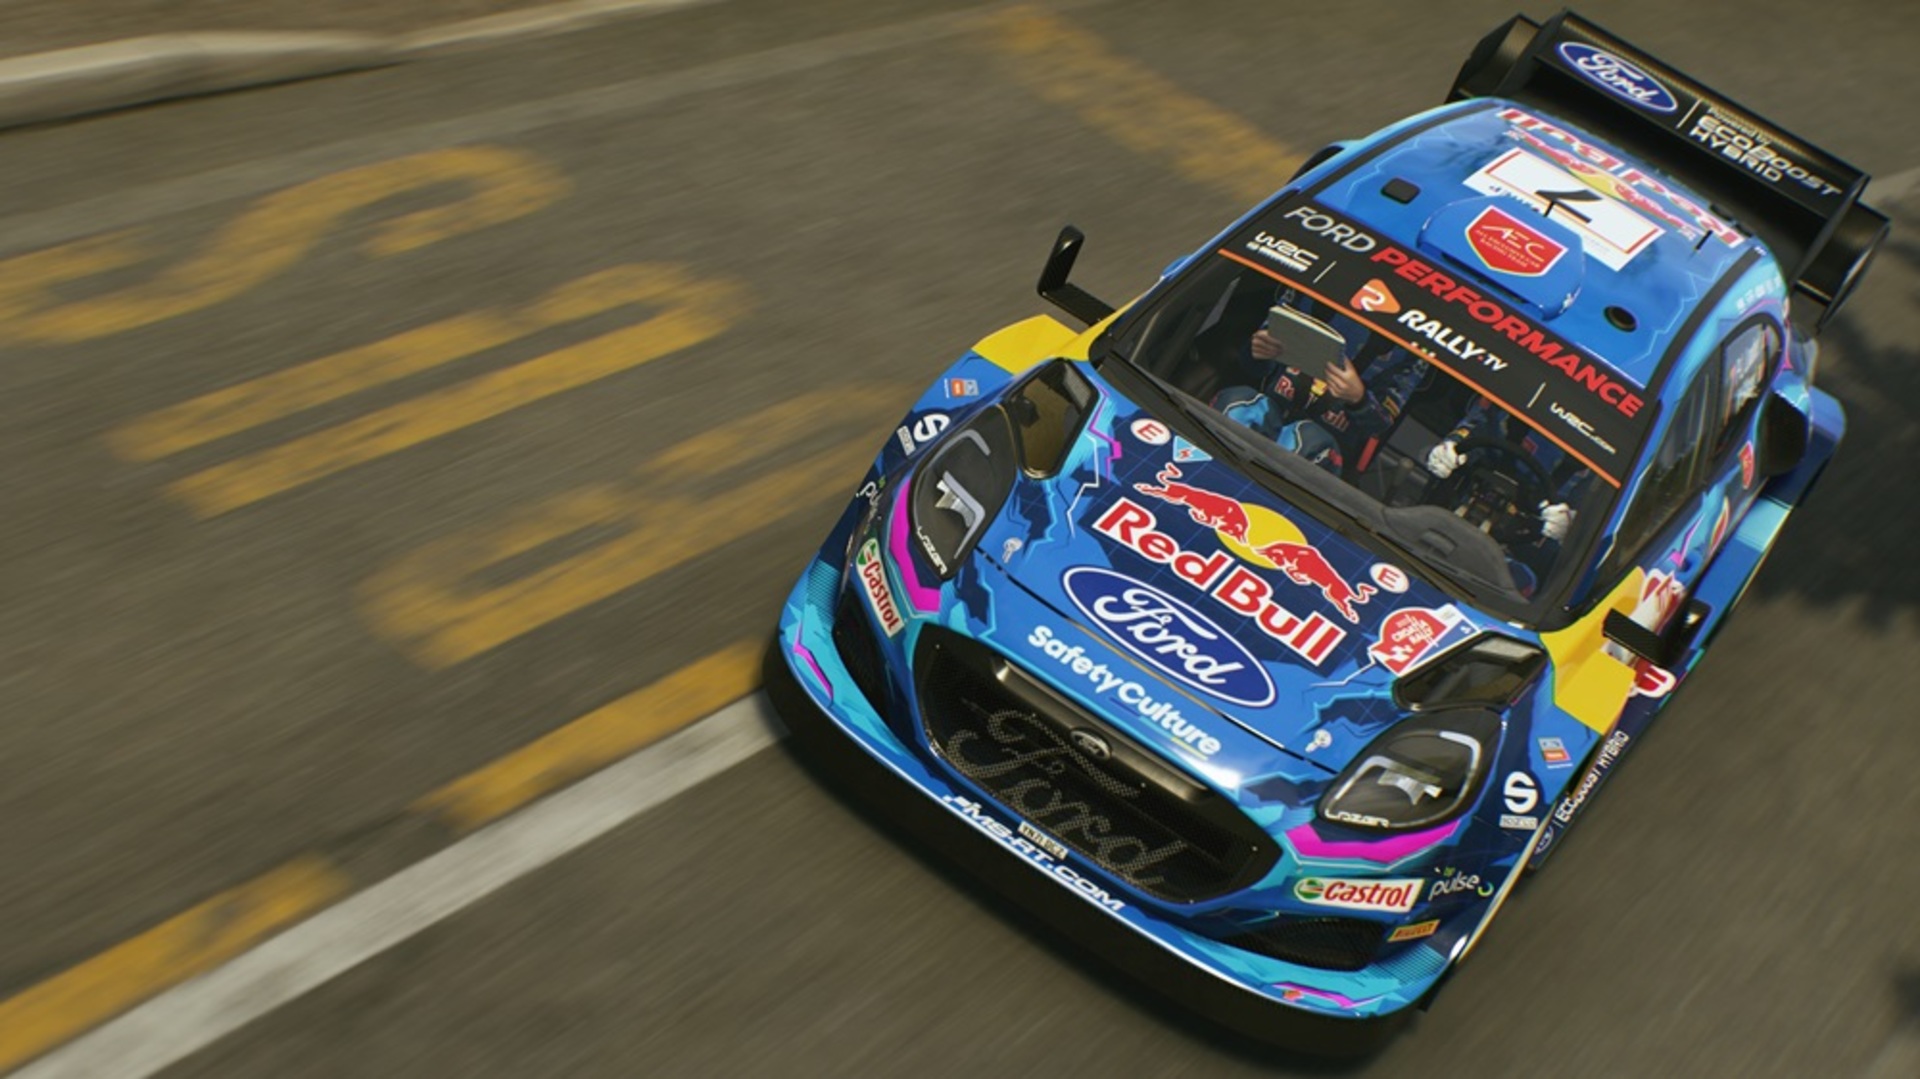 Ապրիլի 9-ին կմեկնարկի EA Sports WRC-ի չորրորդ սեզոնը